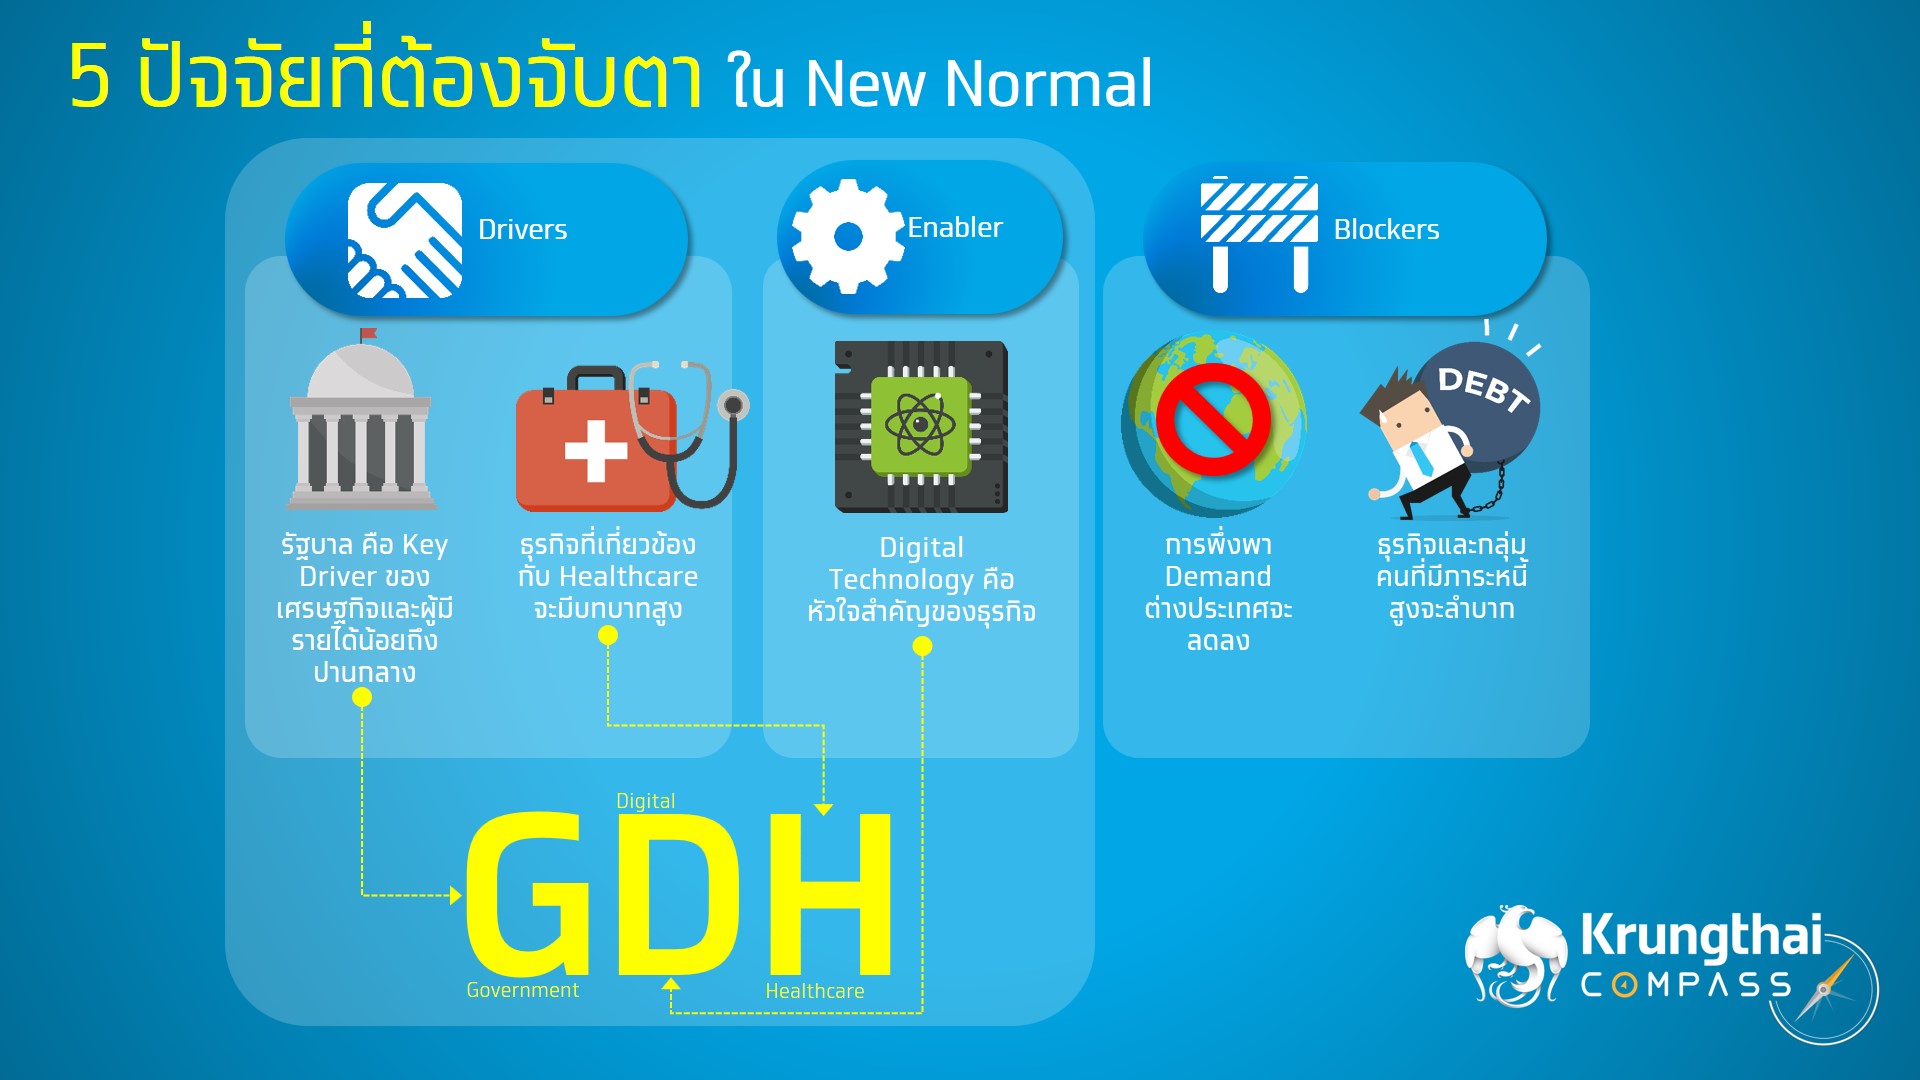 กรุงไทยแนะ 3 ตัวขับเคลื่อนเศรษฐกิจไทยในยุค New Normal